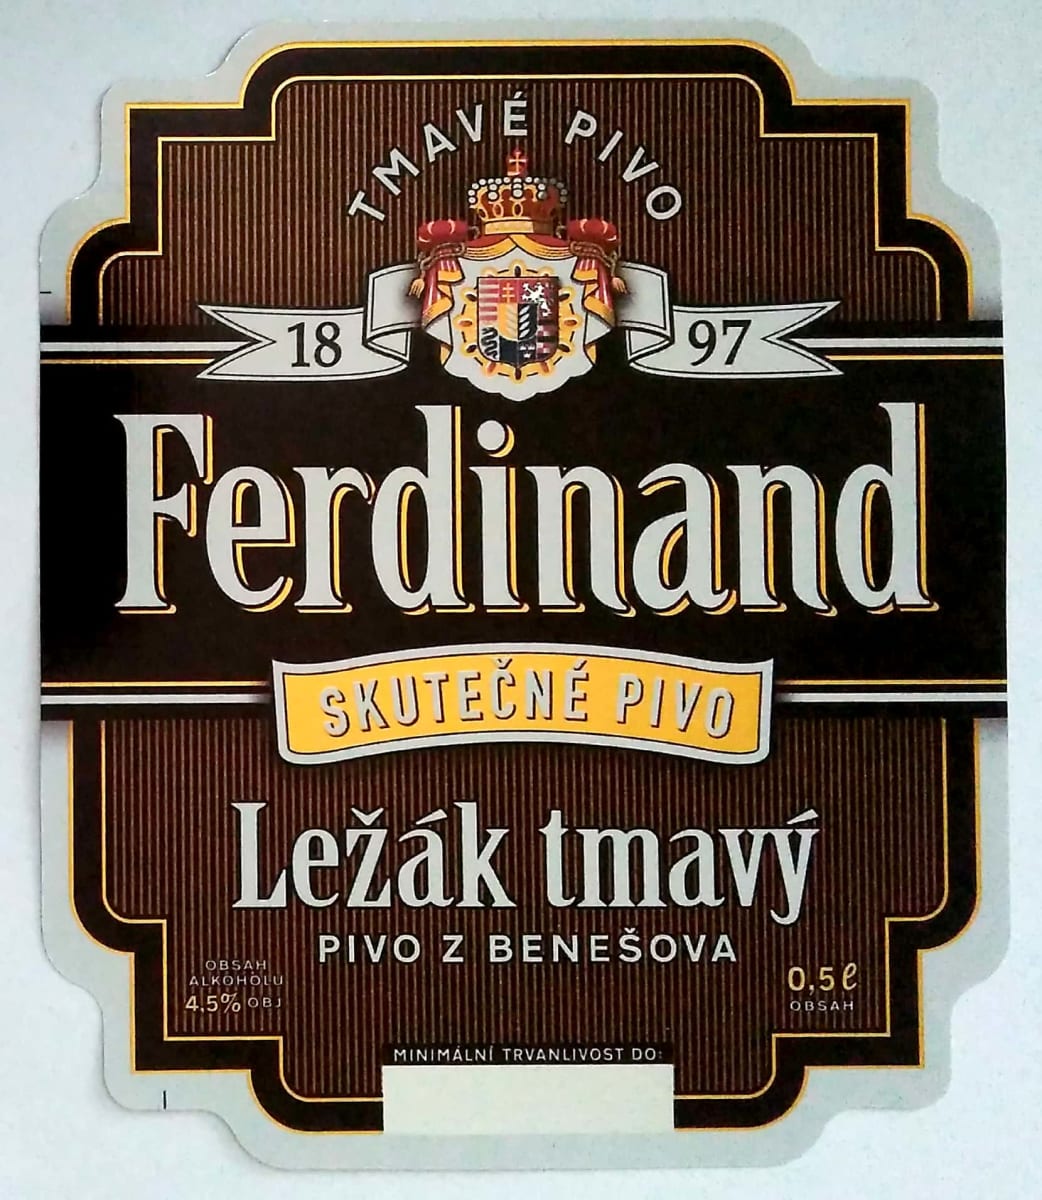 Ferdinand Ležák tmavý Etk. A